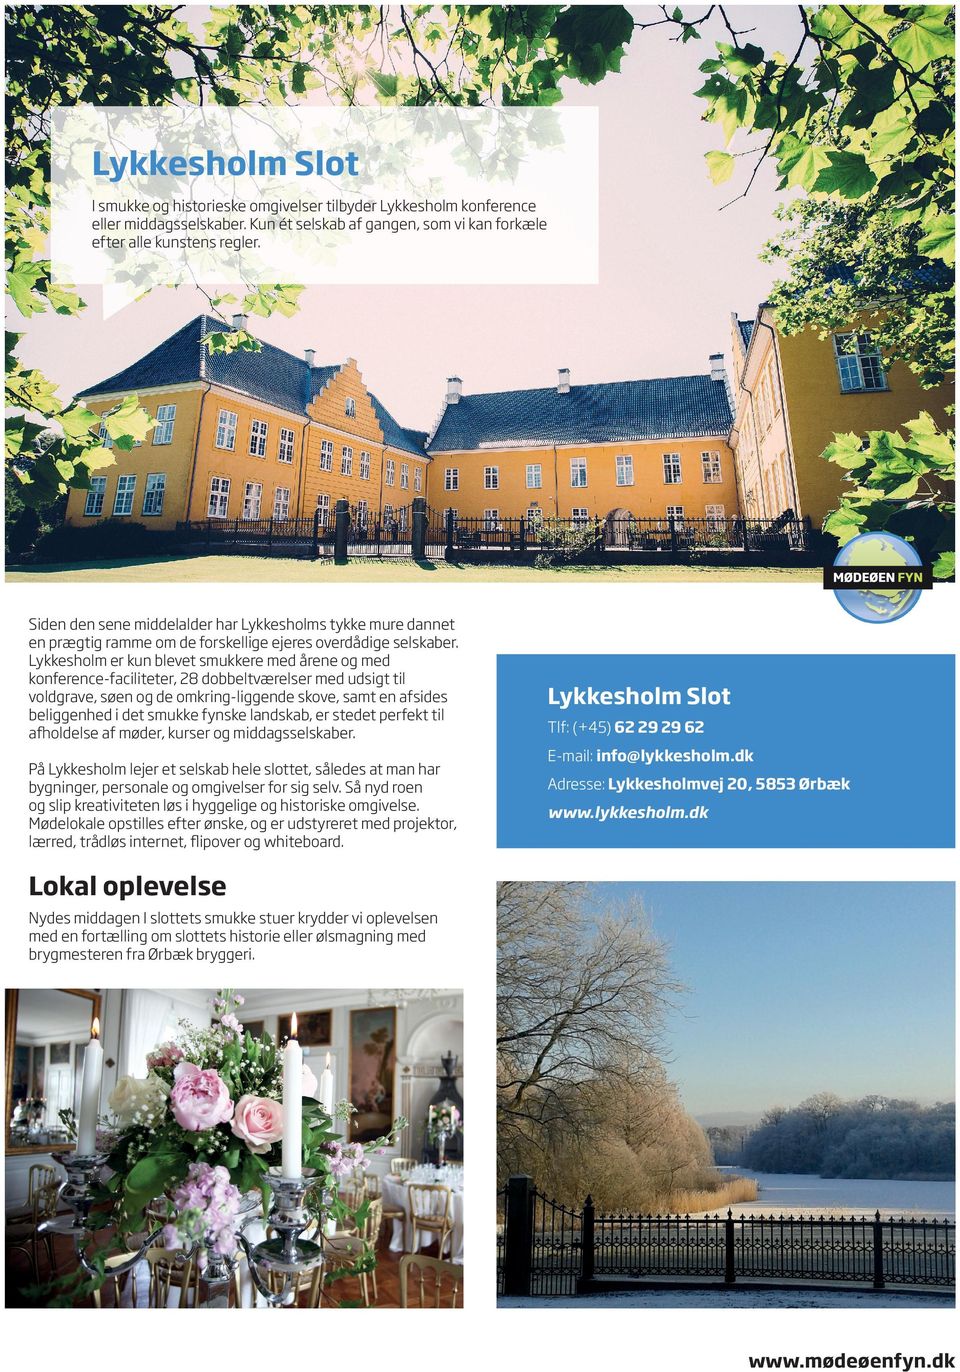 Lykkesholm er kun blevet smukkere med årene og med konference-faciliteter, 28 dobbeltværelser med udsigt til voldgrave, søen og de omkring-liggende skove, samt en afsides beliggenhed i det smukke